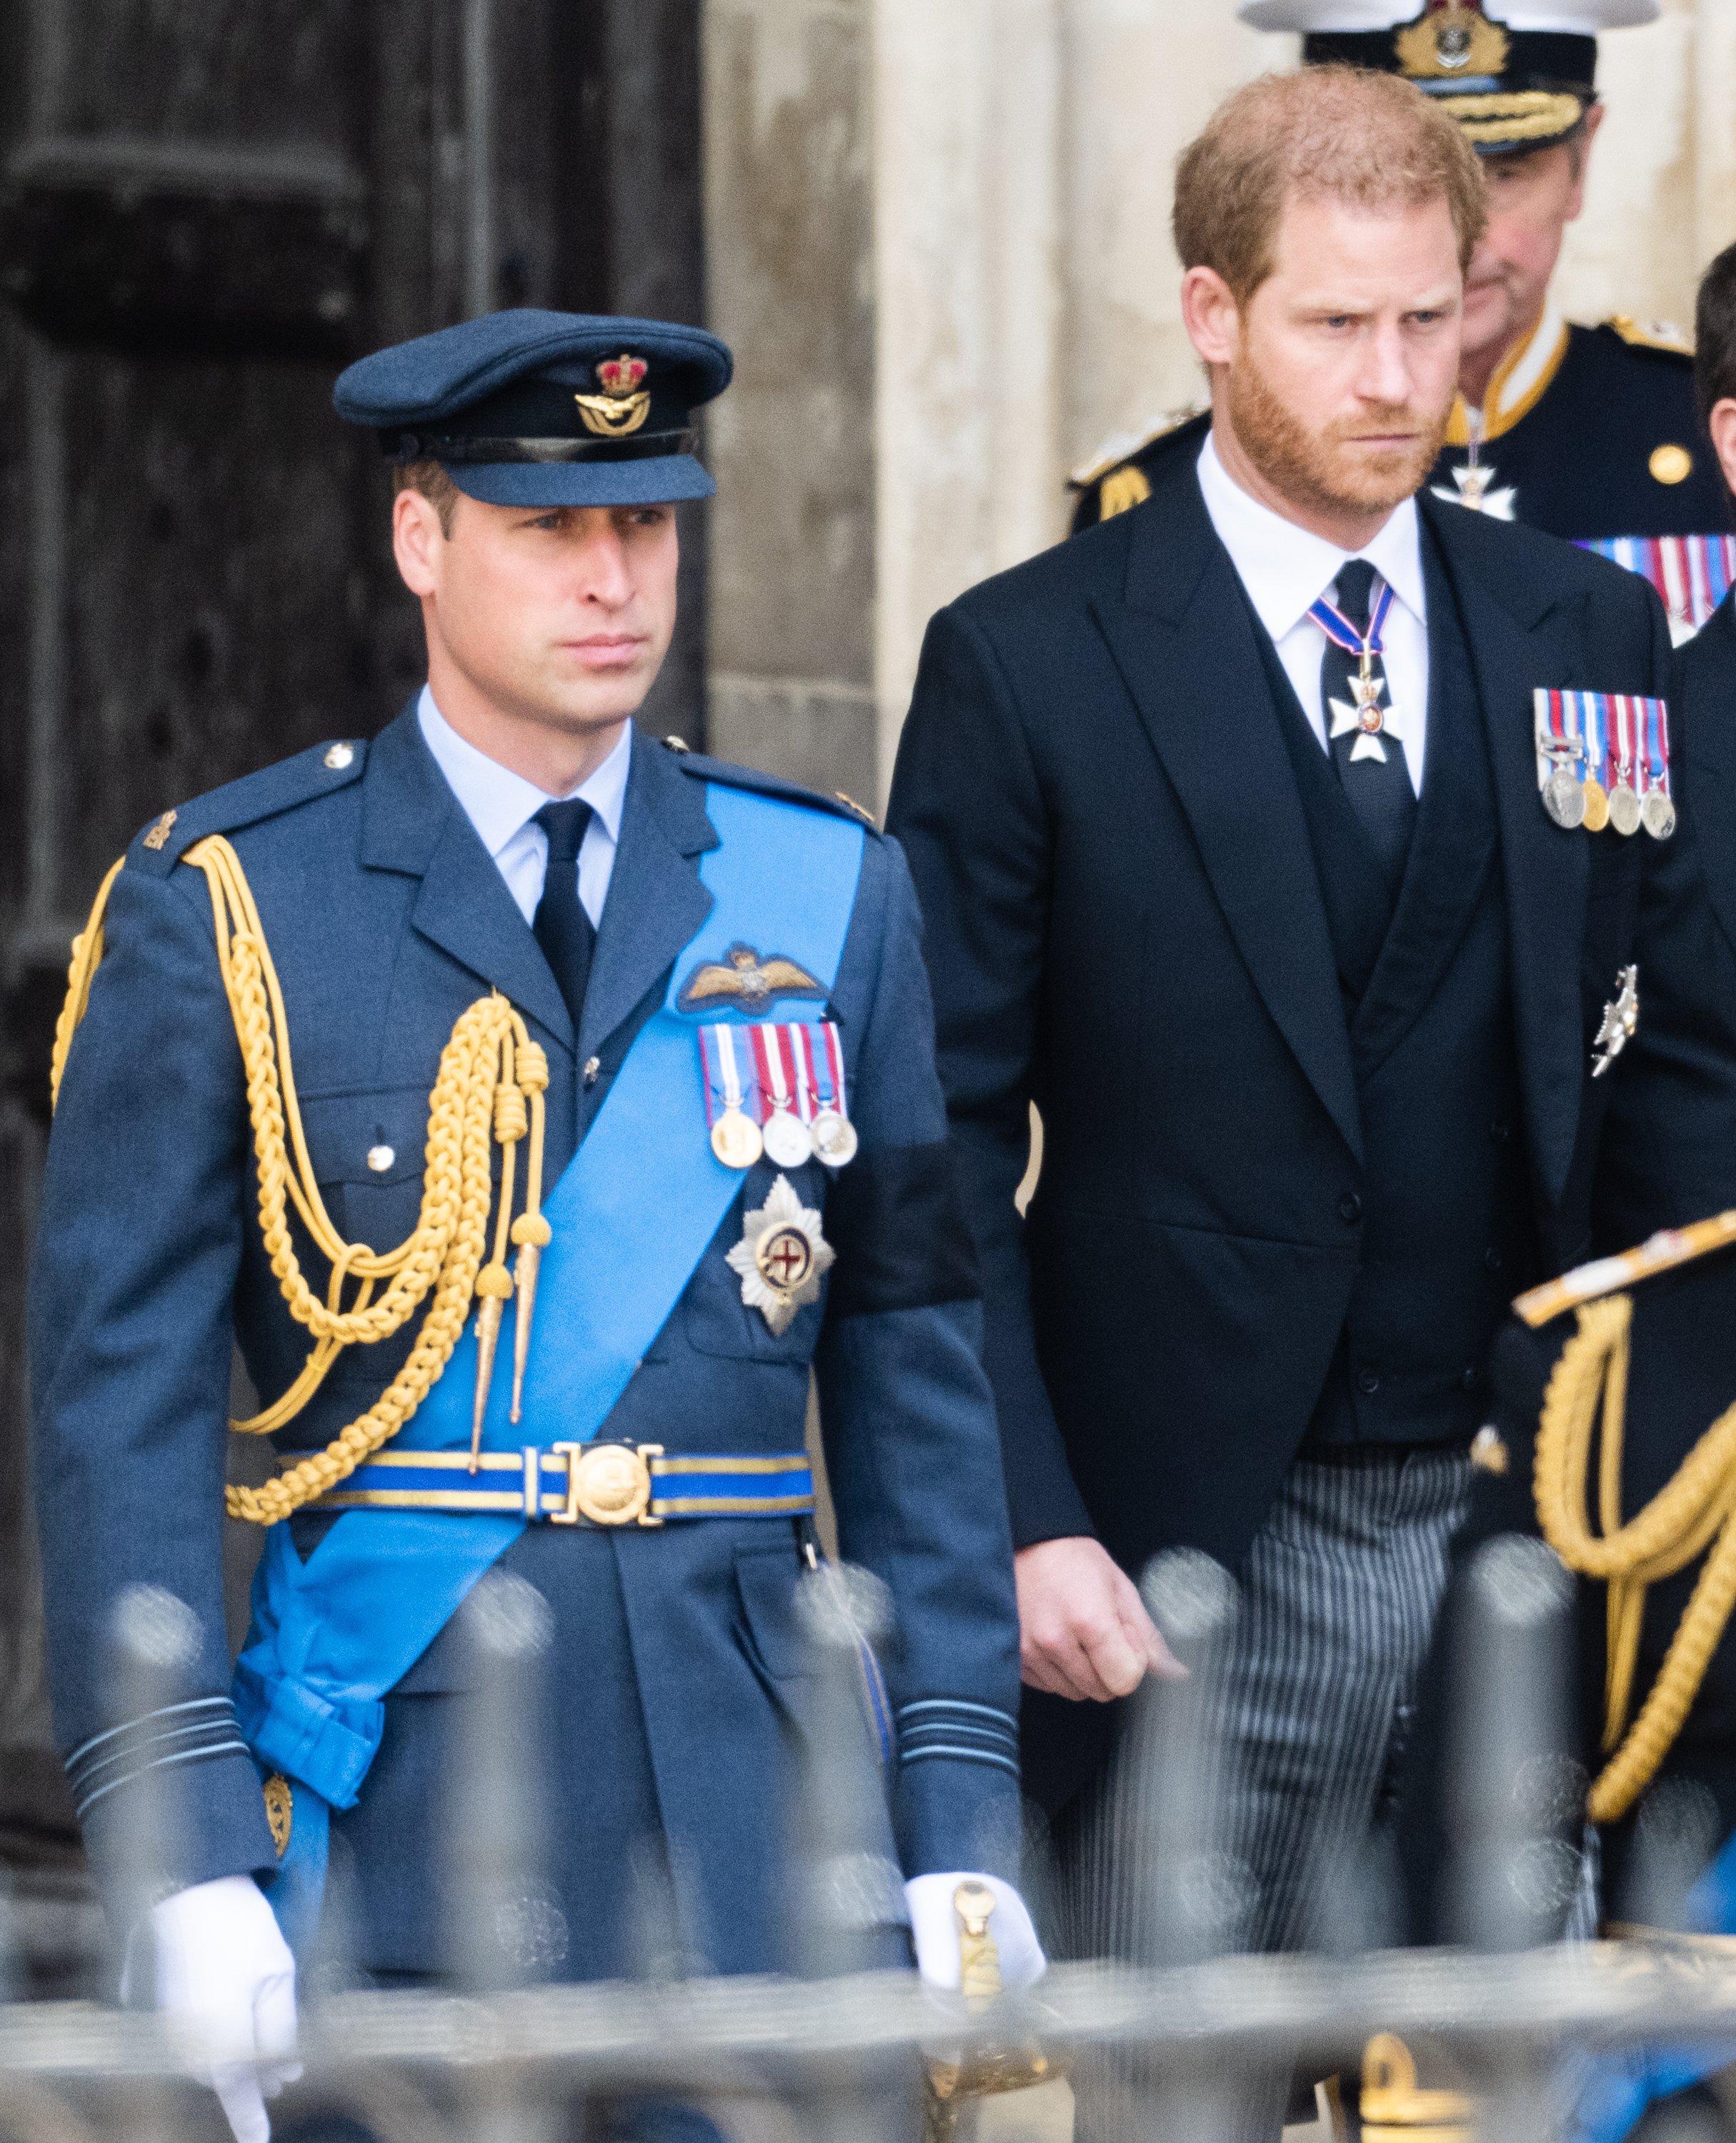 Prinz William, Prinz von Wales, und Prinz Harry, Herzog von Sussex, während der staatlichen Beerdigung von Königin Elizabeth II. in der Westminster Abbey am 19. September 2022 in London, England. | Quelle: Getty Images